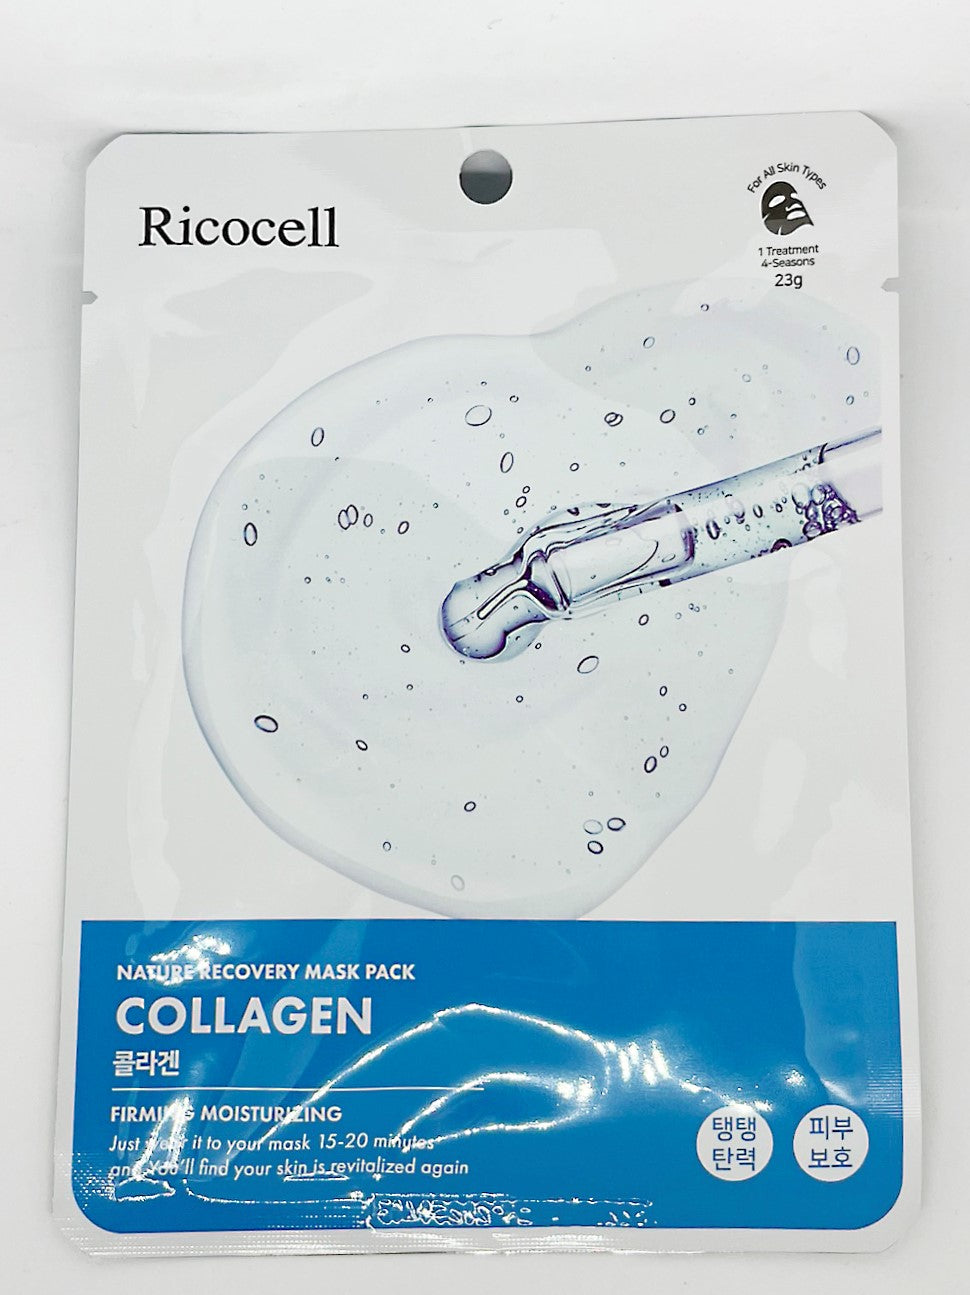 Ricocell　ナチュラルリカバリーマスクパック(コラーゲン）